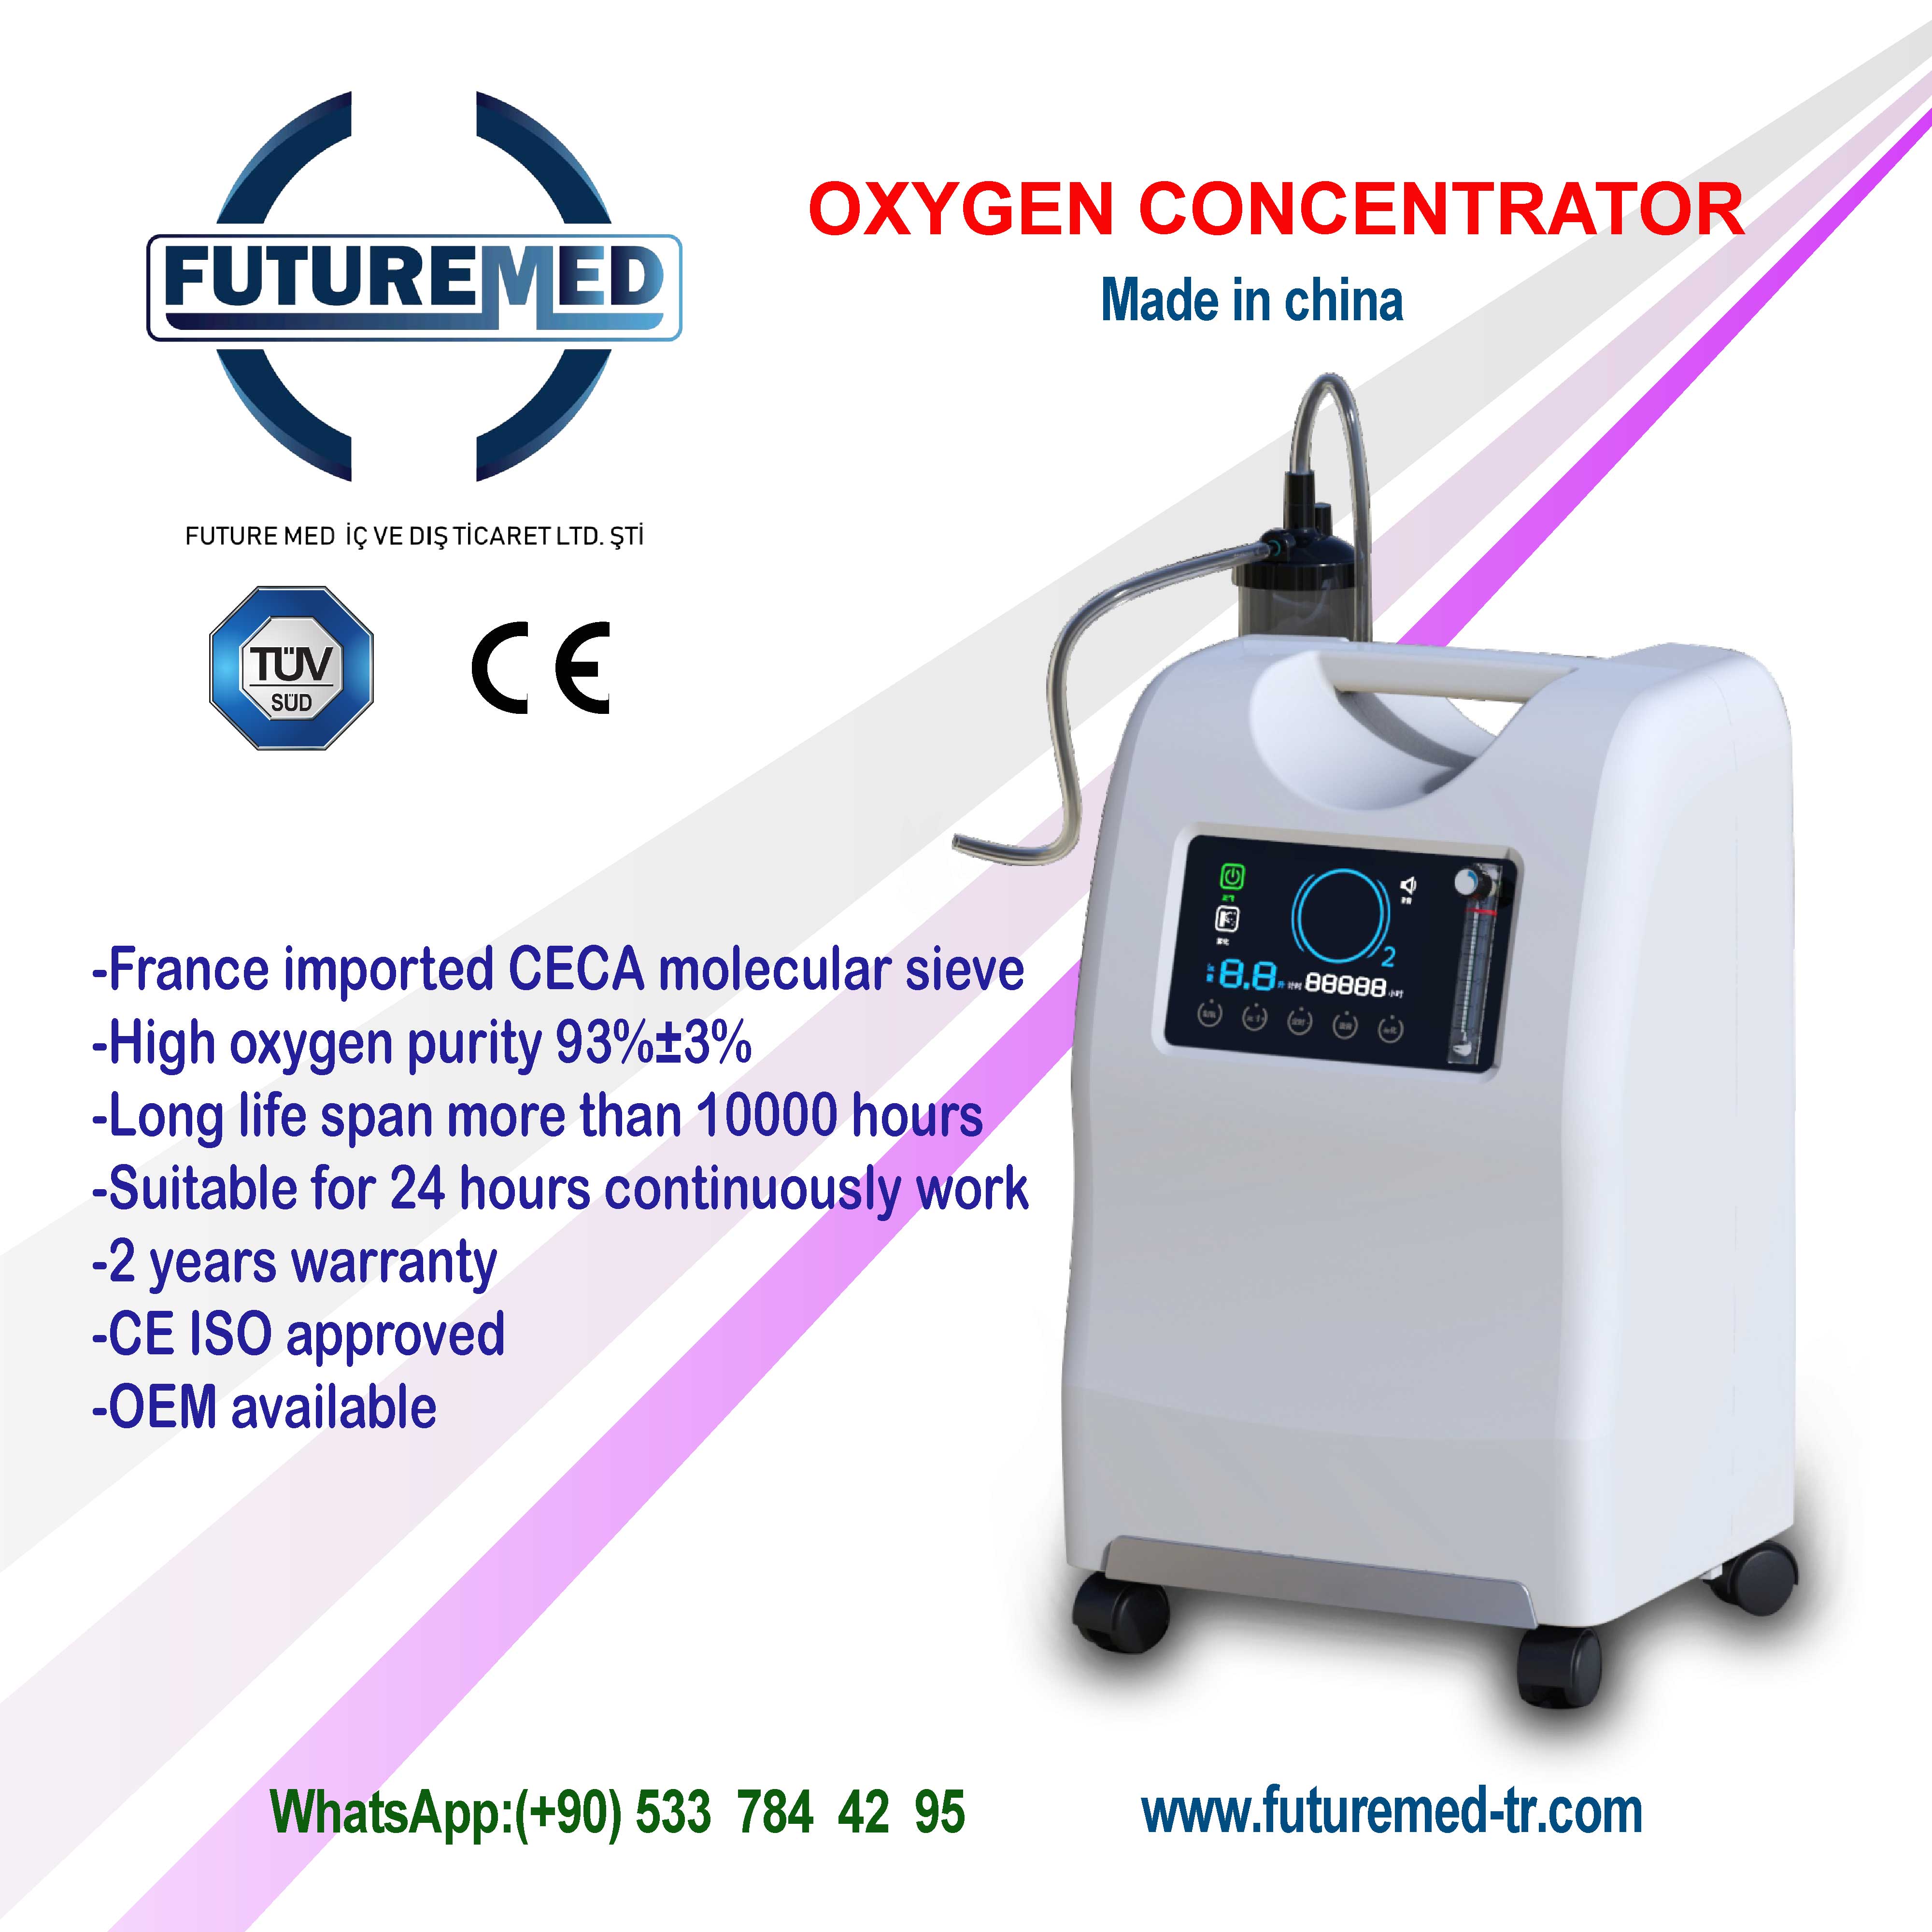   وصول مولد الأكسجين العملاق   10 ليتر يجمع بين الكفاءة العالية والسعر المنخفض  الى FUTURE MED  شركة اجهزة طبية.